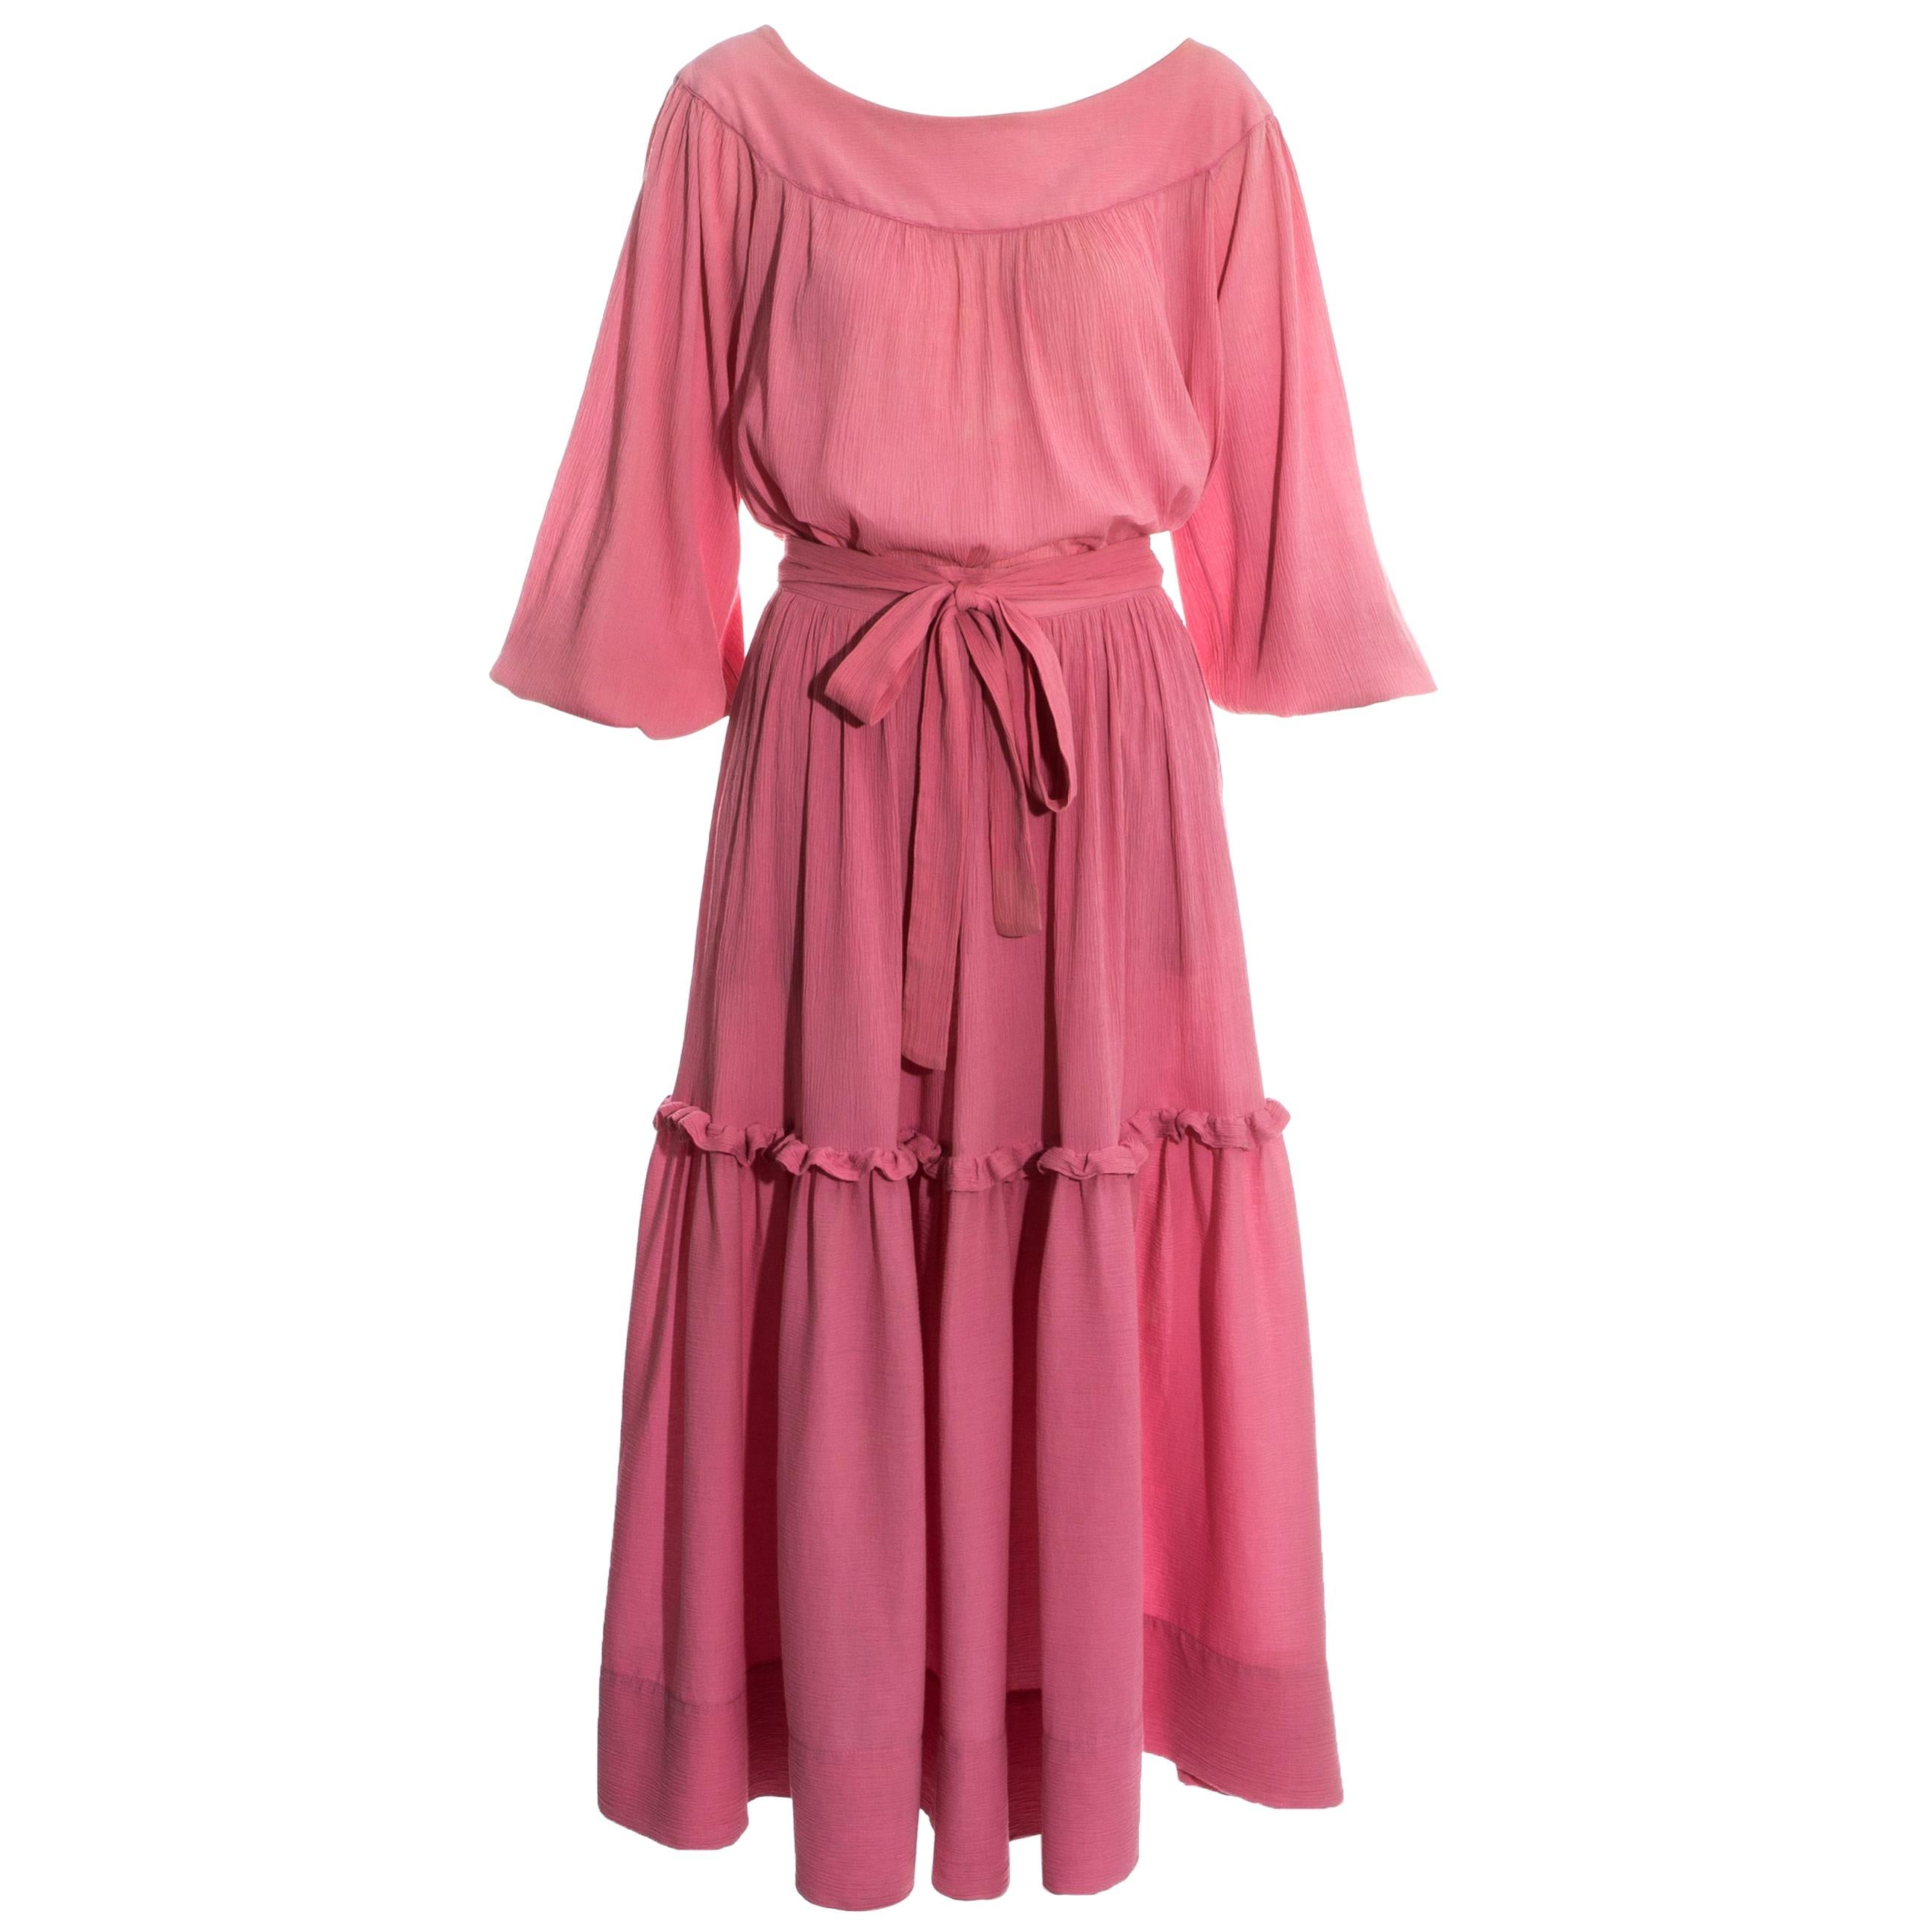 Yves Saint Laurent pink crinkled silk blouse and skirt set, c. 1970s